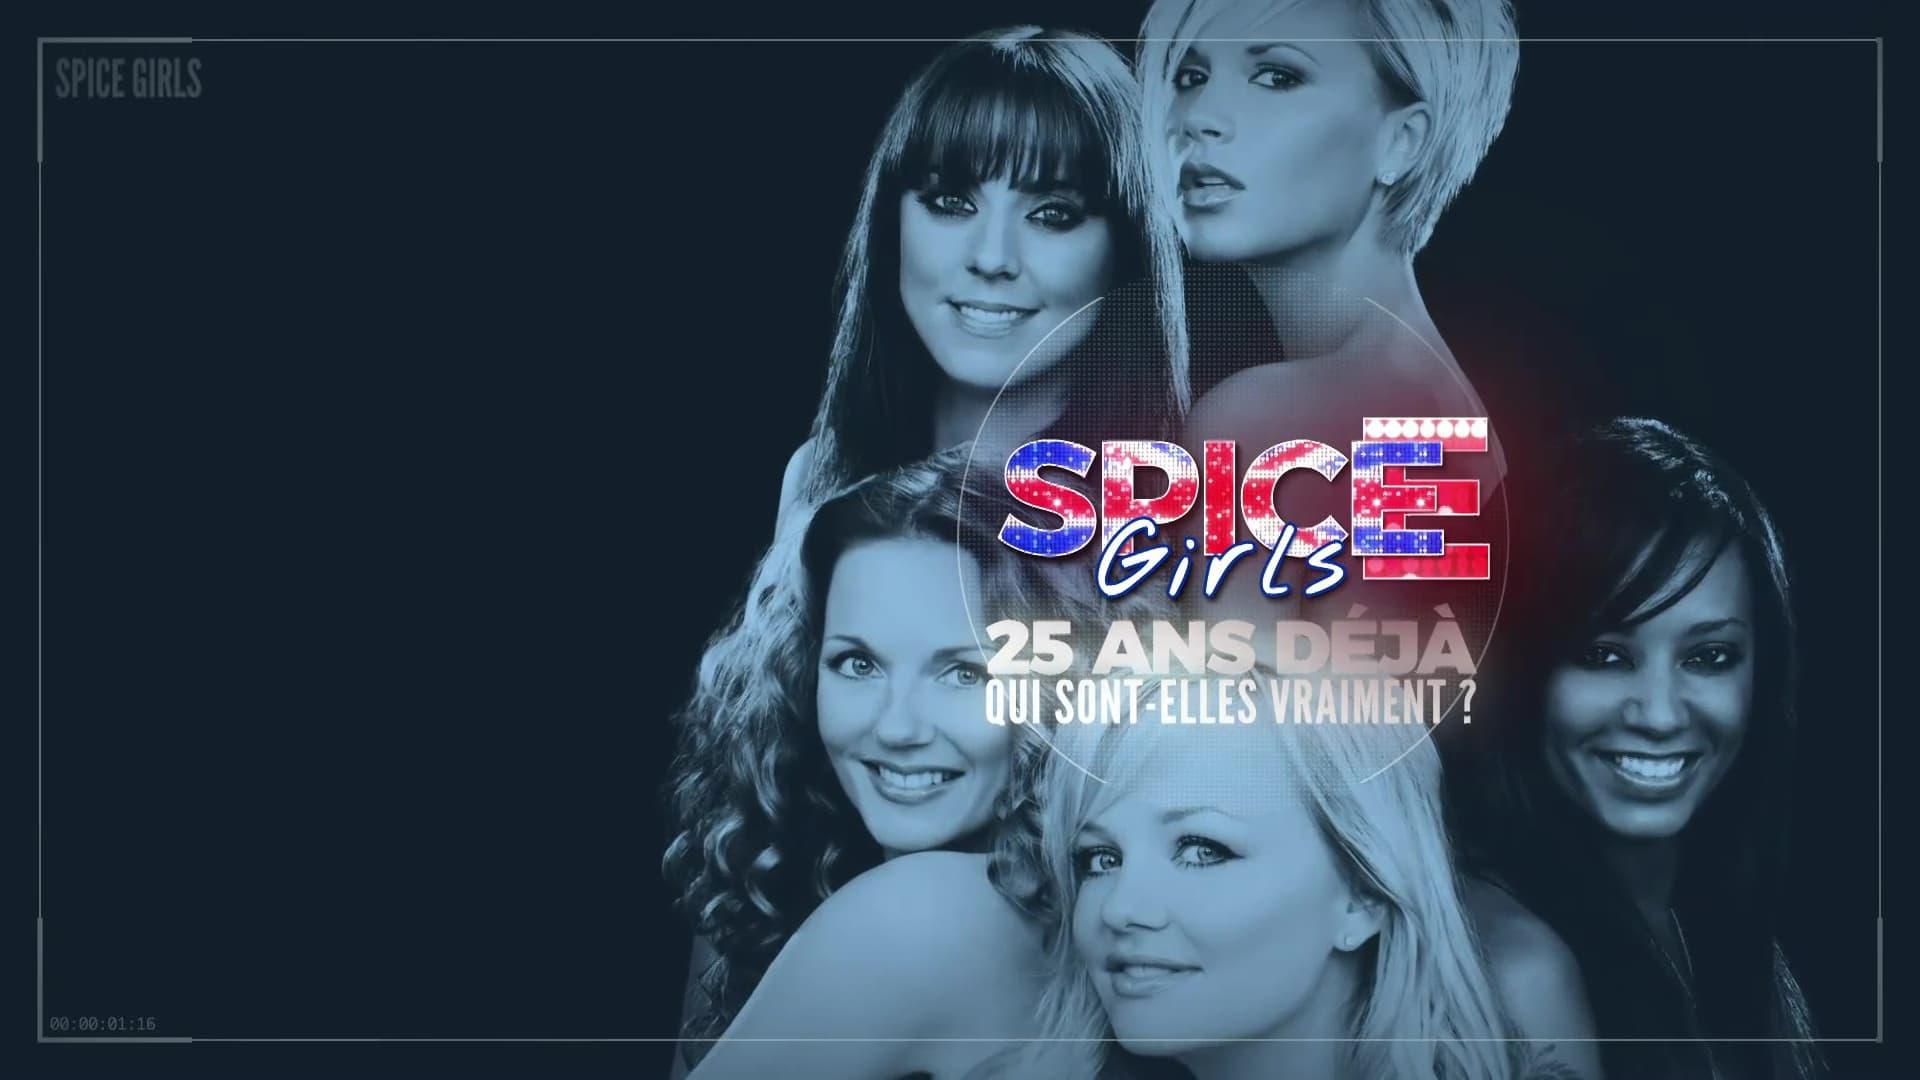 Spice Girls: 25 ans déjà, qui sont-elles vraiment? backdrop